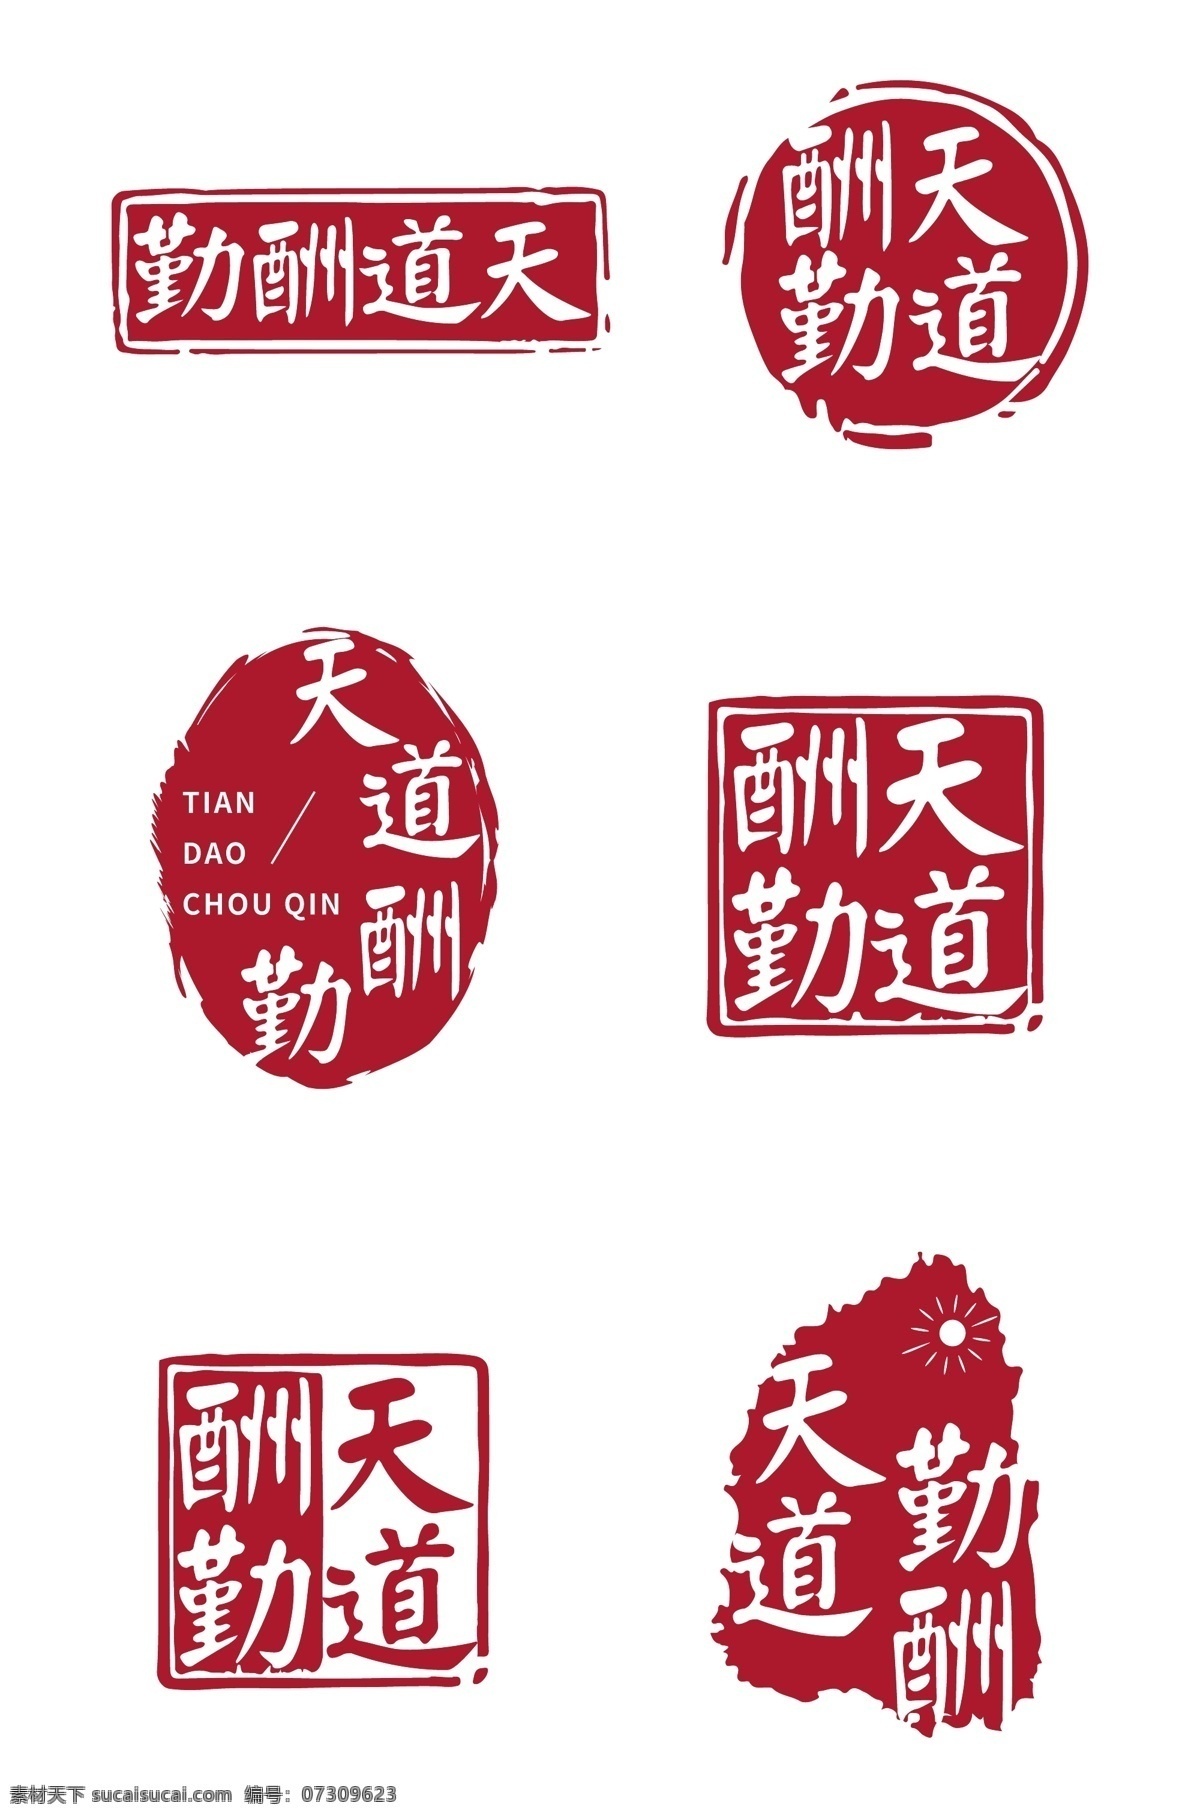 天道酬勤 中国 风 印章 字体 中国风印章 红色印章 国潮印章 logo印章 字体印章 红色印章字体 鼠年印章字体 新年印章字体